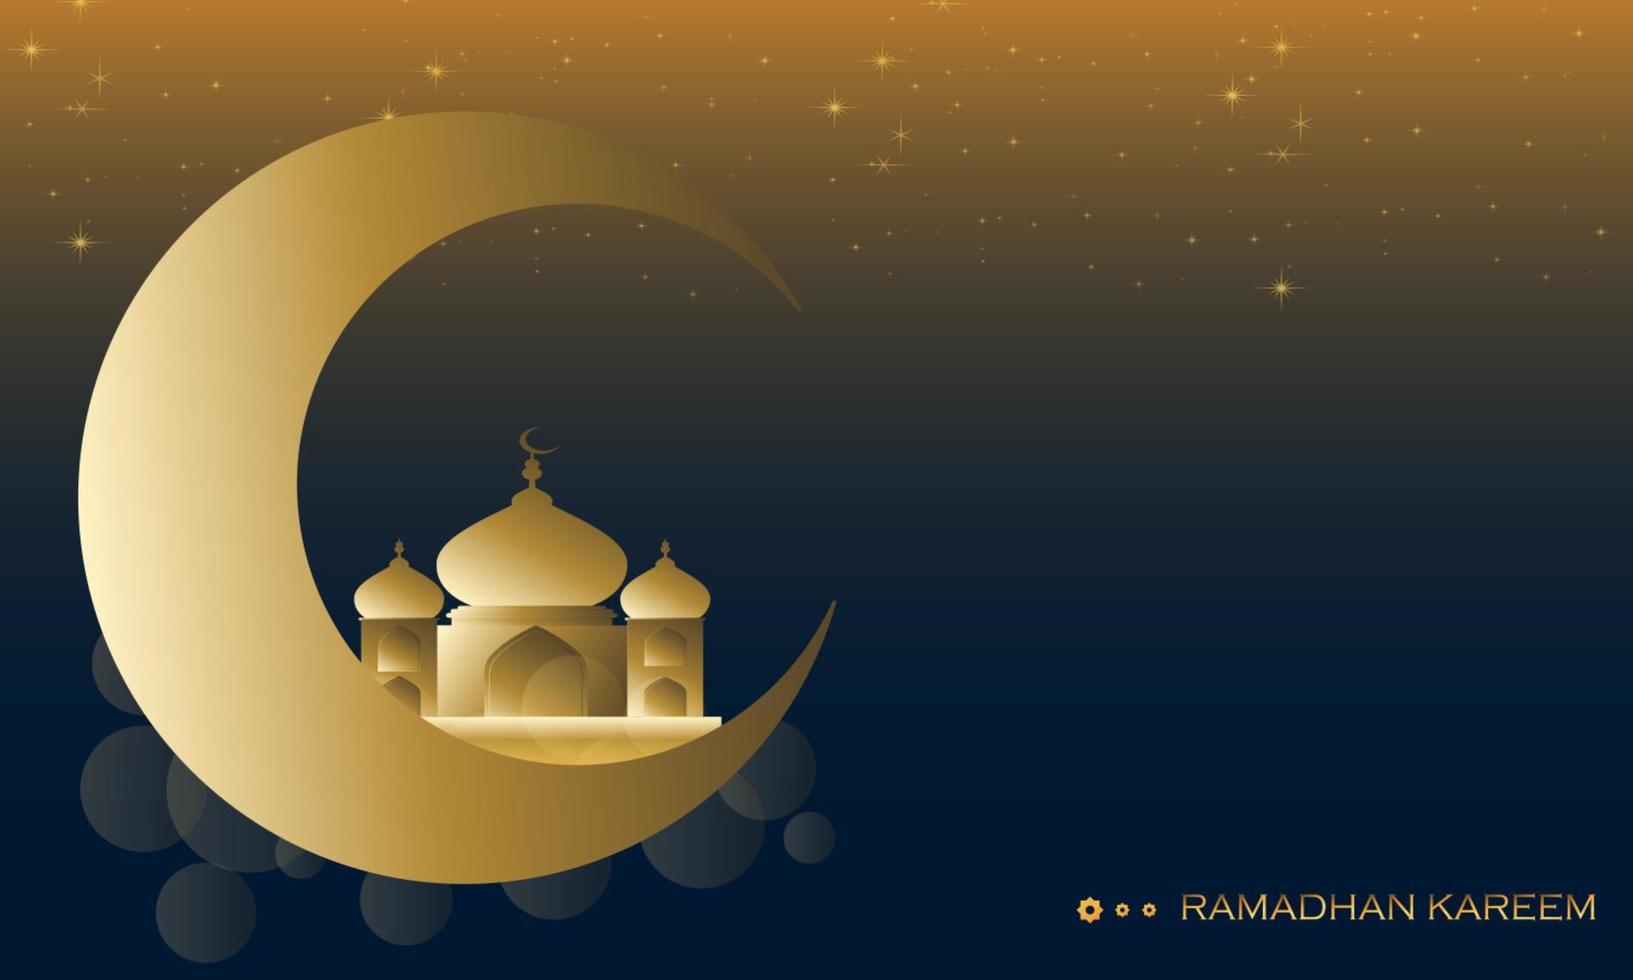 ramadan kareem-achtergrond, met moskee en maansikkelontwerp, ideaal voor islamitisch concept vector